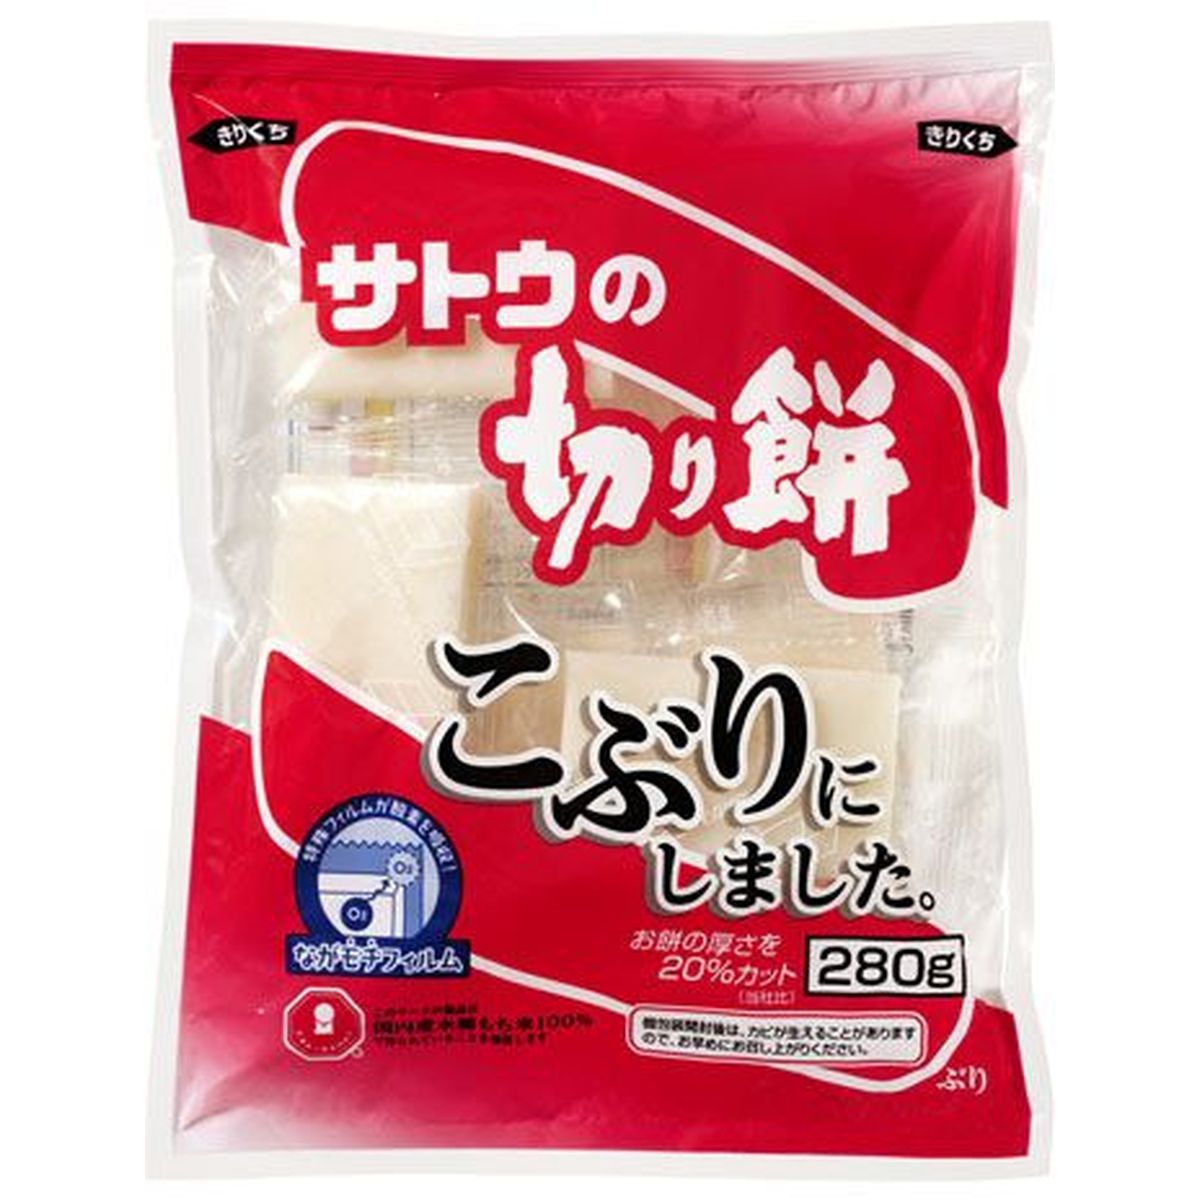 【20個入リ】サトウ サトウノ切リ餅 コブリニシ...の商品画像